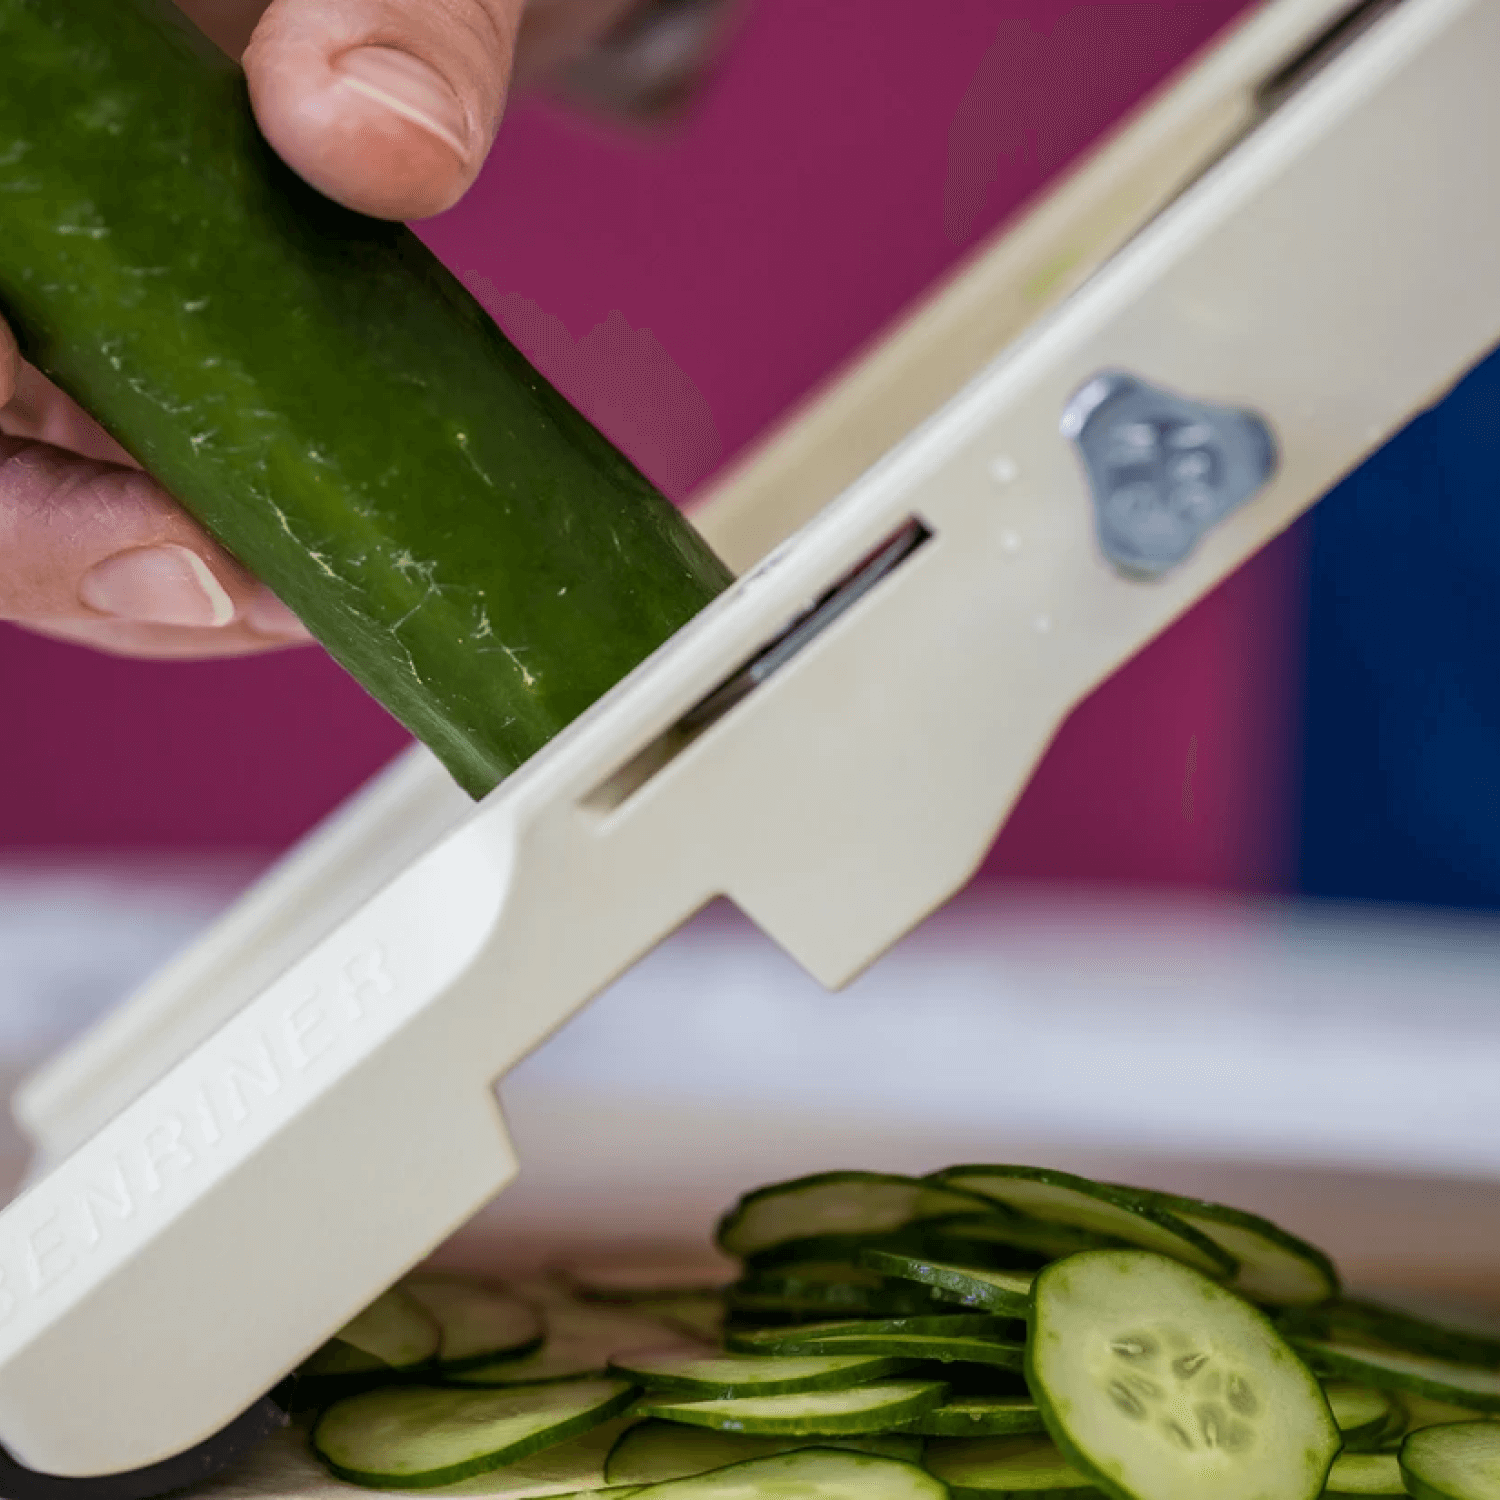 Super Benriner No 64 Japanese Mandoline Slicer Vegetable Cooker Choose  Brand New